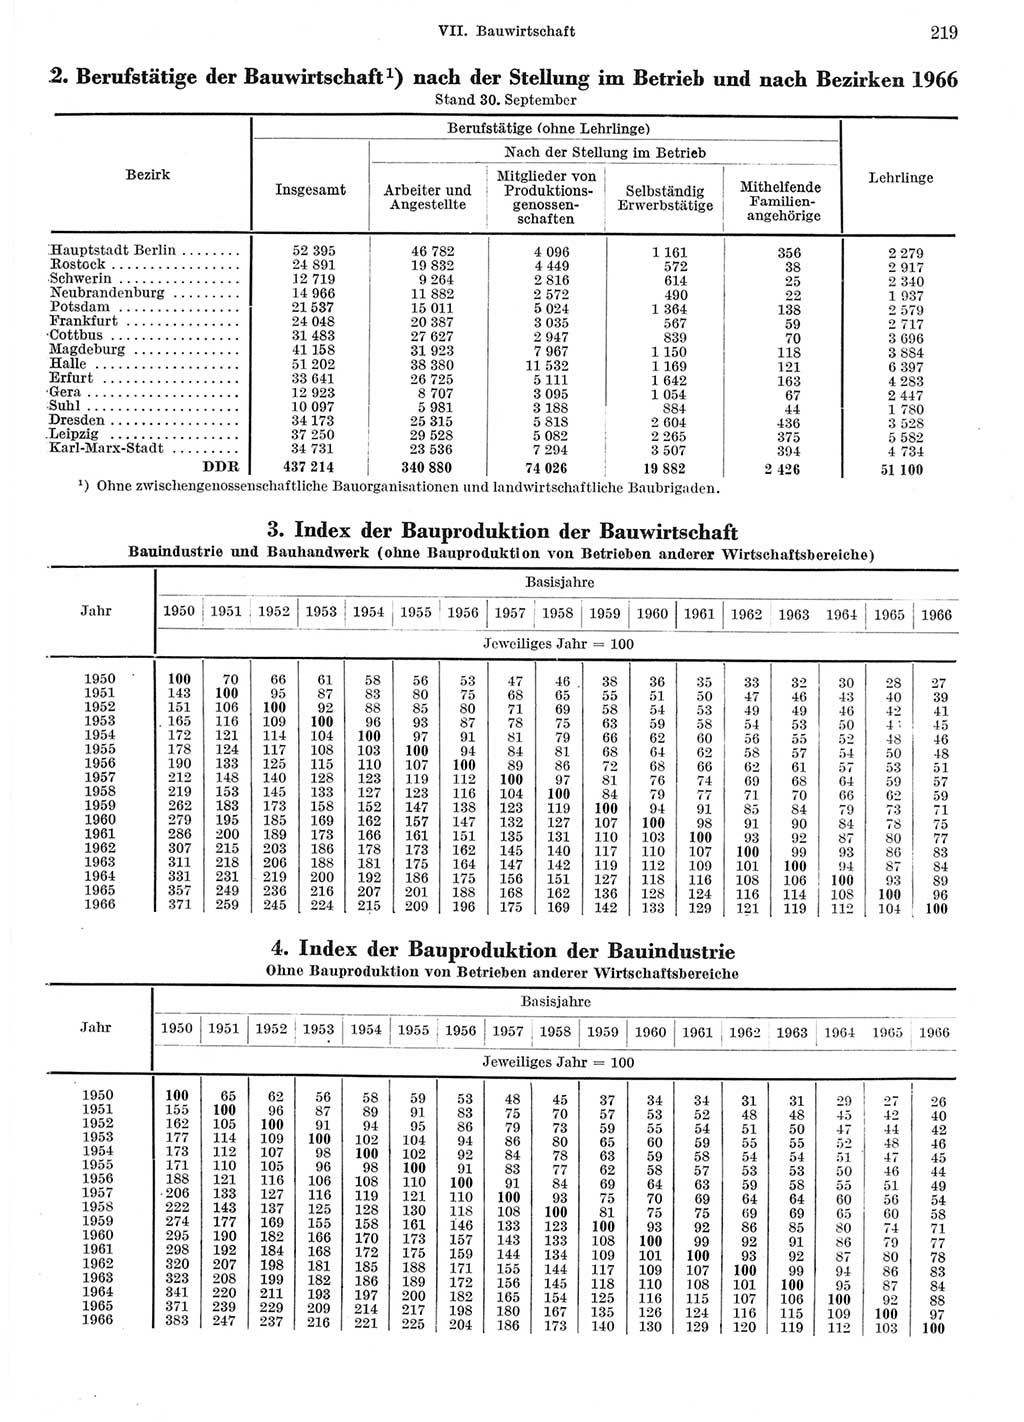 Statistisches Jahrbuch der Deutschen Demokratischen Republik (DDR) 1967, Seite 219 (Stat. Jb. DDR 1967, S. 219)